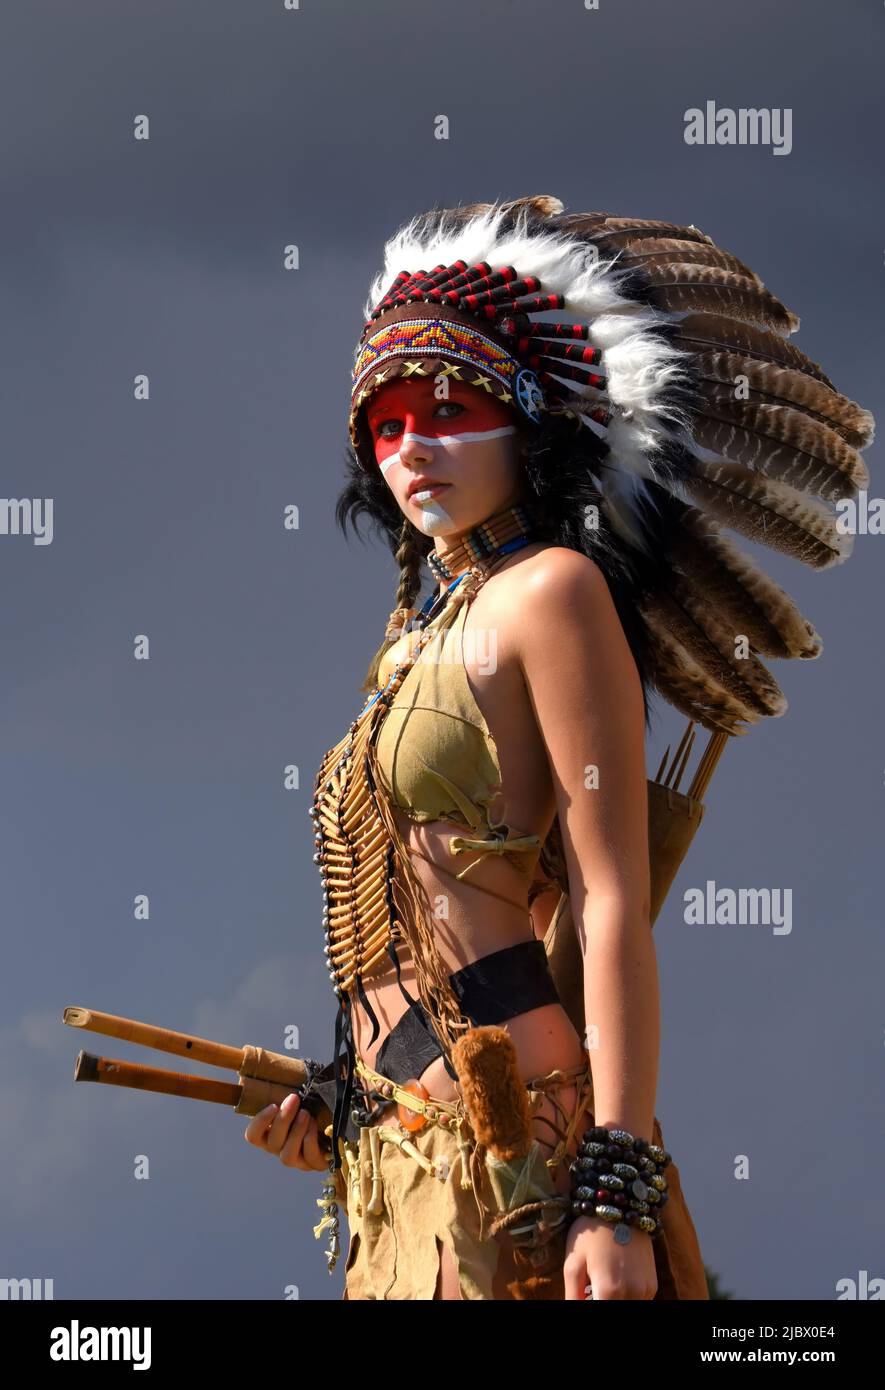 Eine indianische Ureinwohnerin steht vor grauen Regenwolken. Sie trägt einen gefiederten Kopfschmuck und trägt traditionelle indische Kleidung. Stockfoto